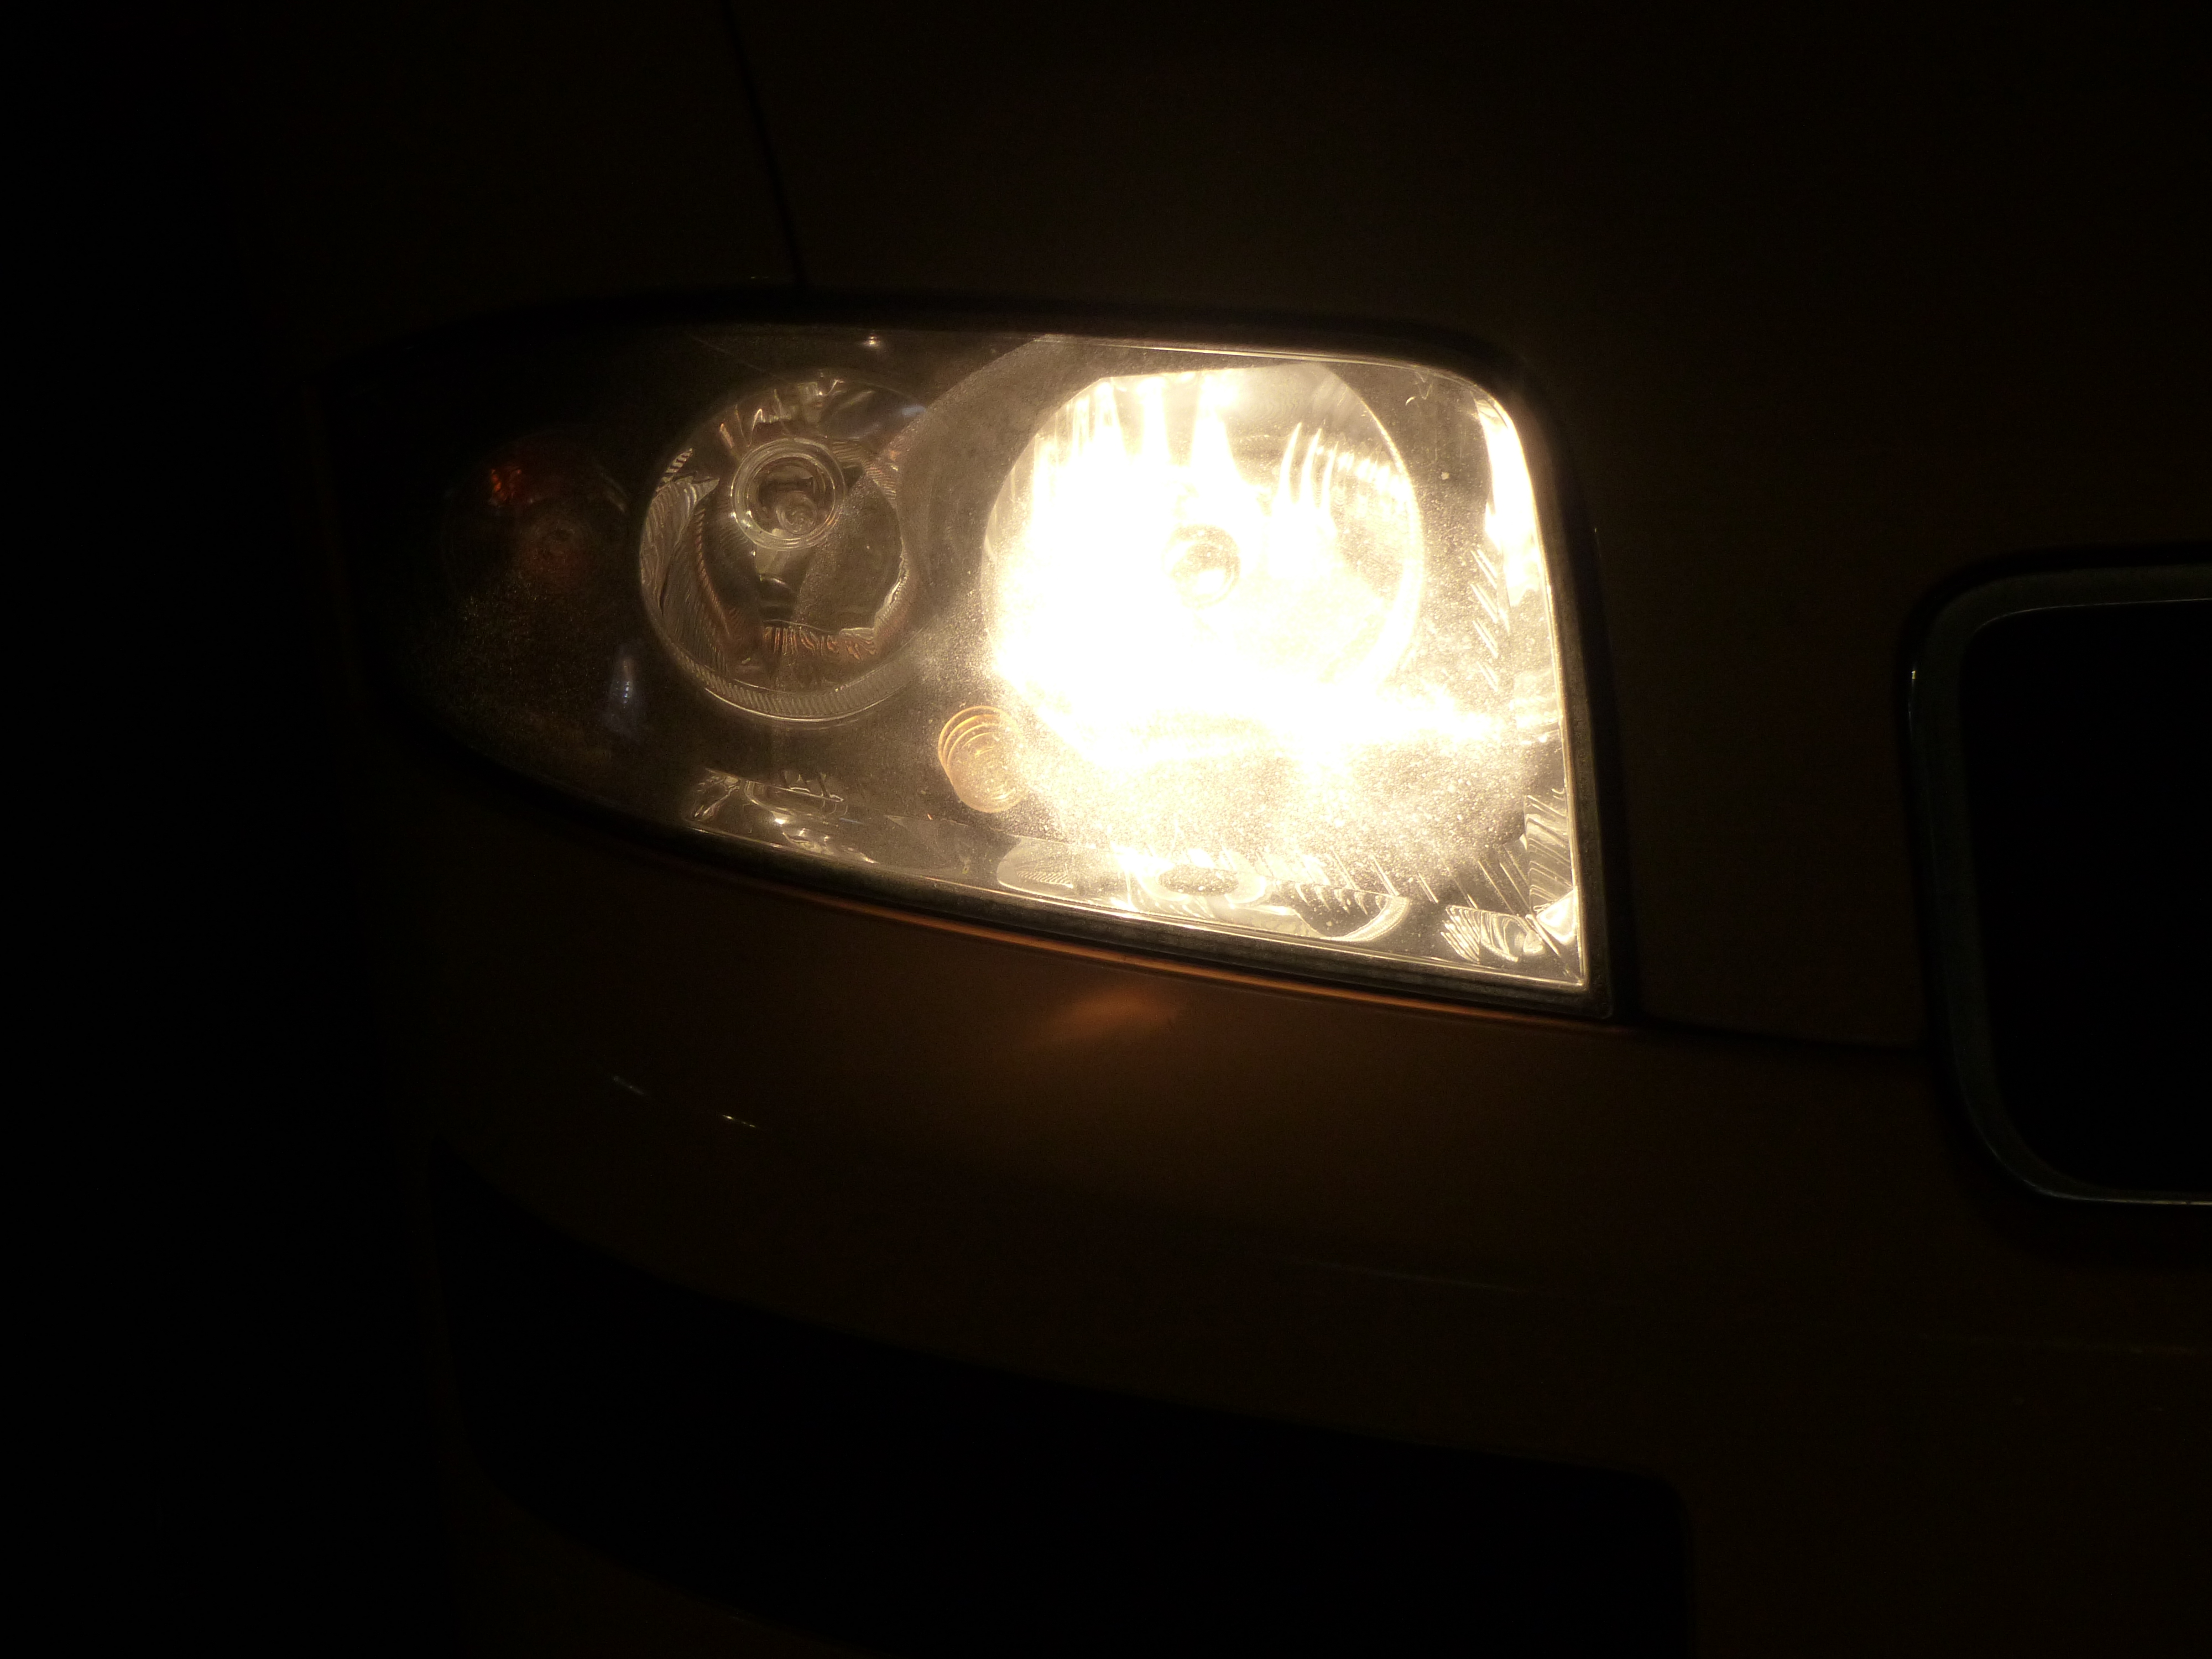 LED anstelle H7 - Seite 3 - Ausstattungen & Umbauten - Audi A2 Club  Deutschland